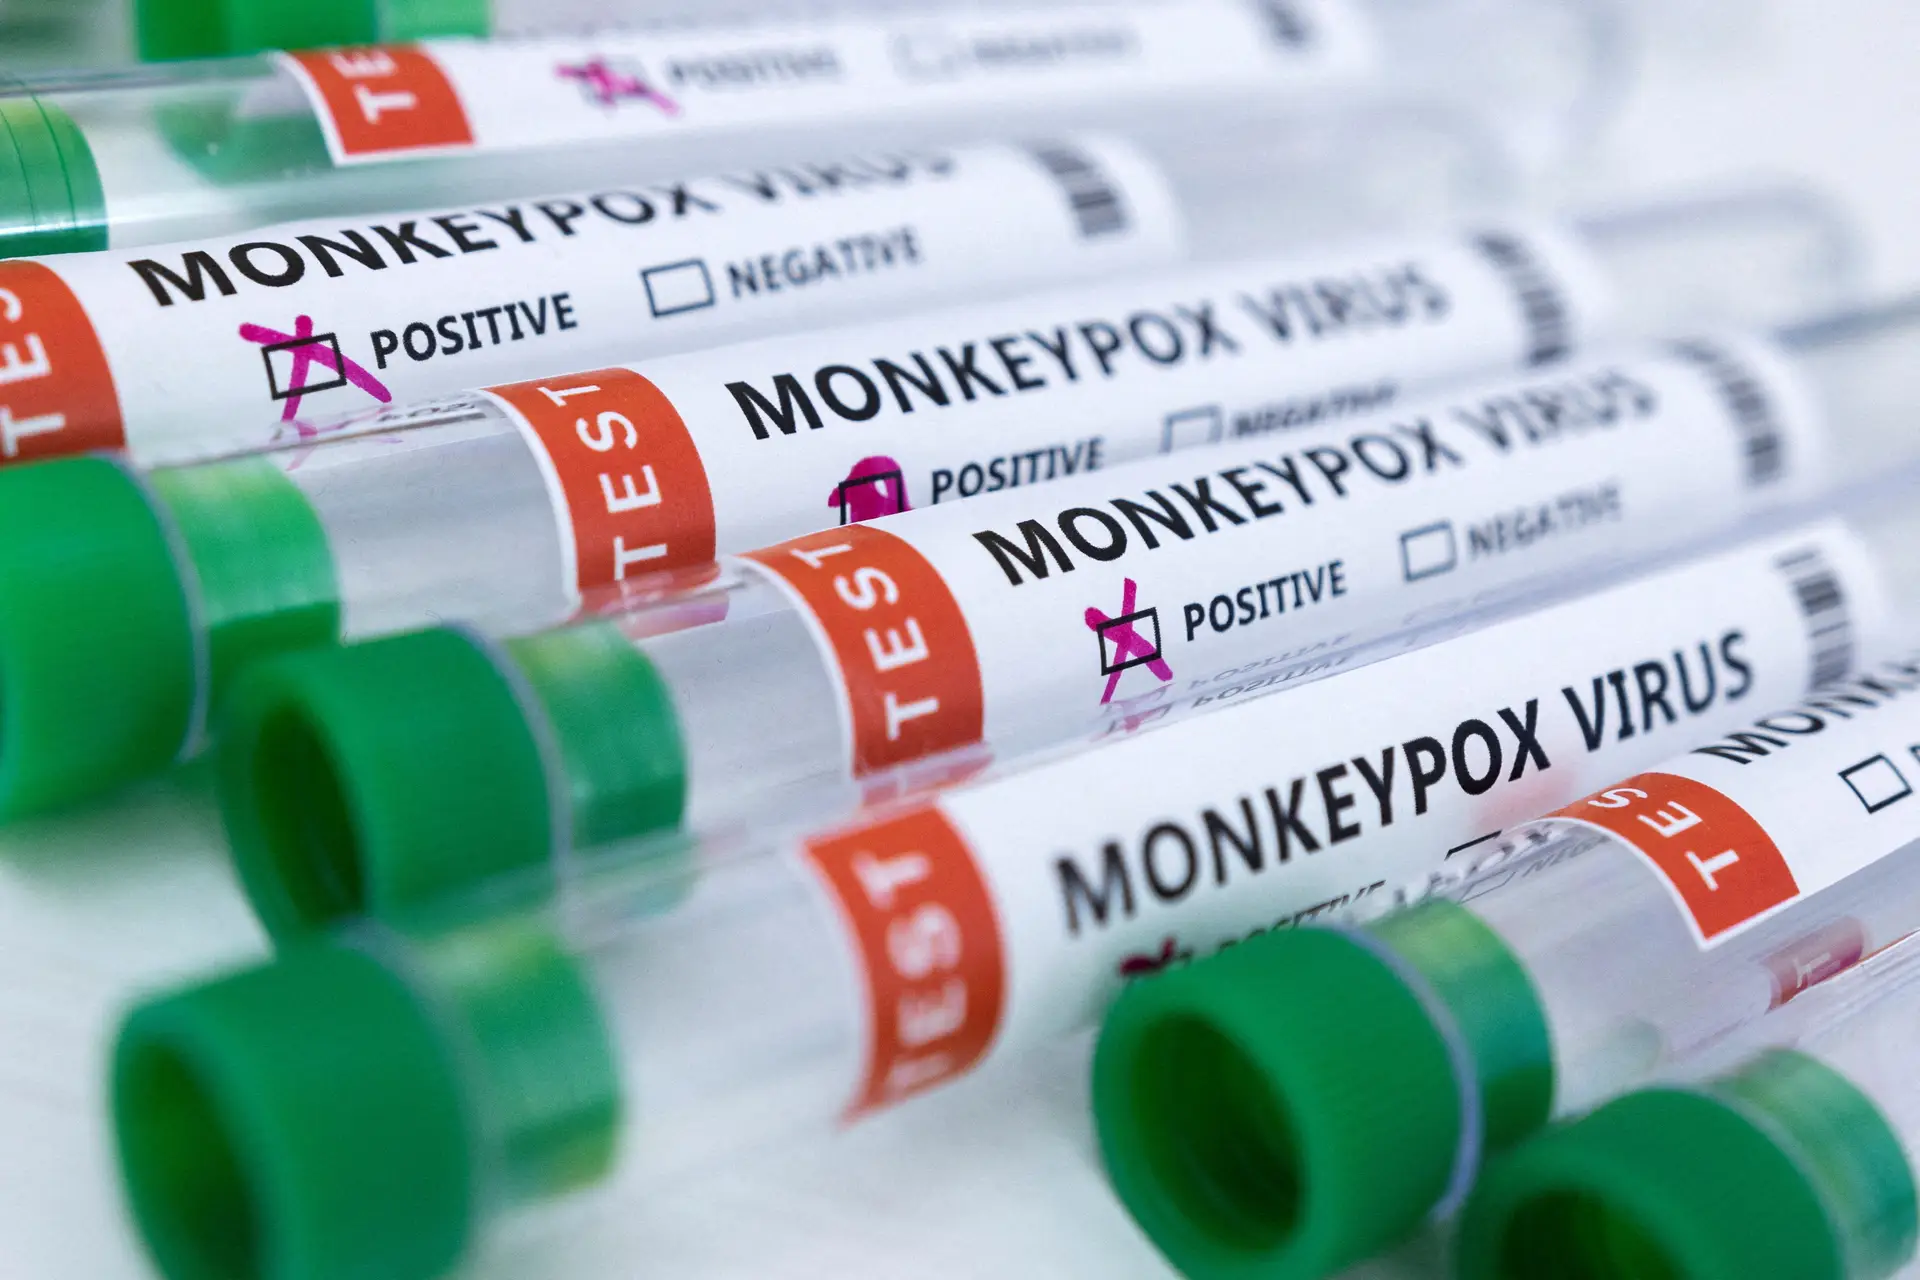 Monkeypox: surto em aparente fase de abrandamento em Portugal